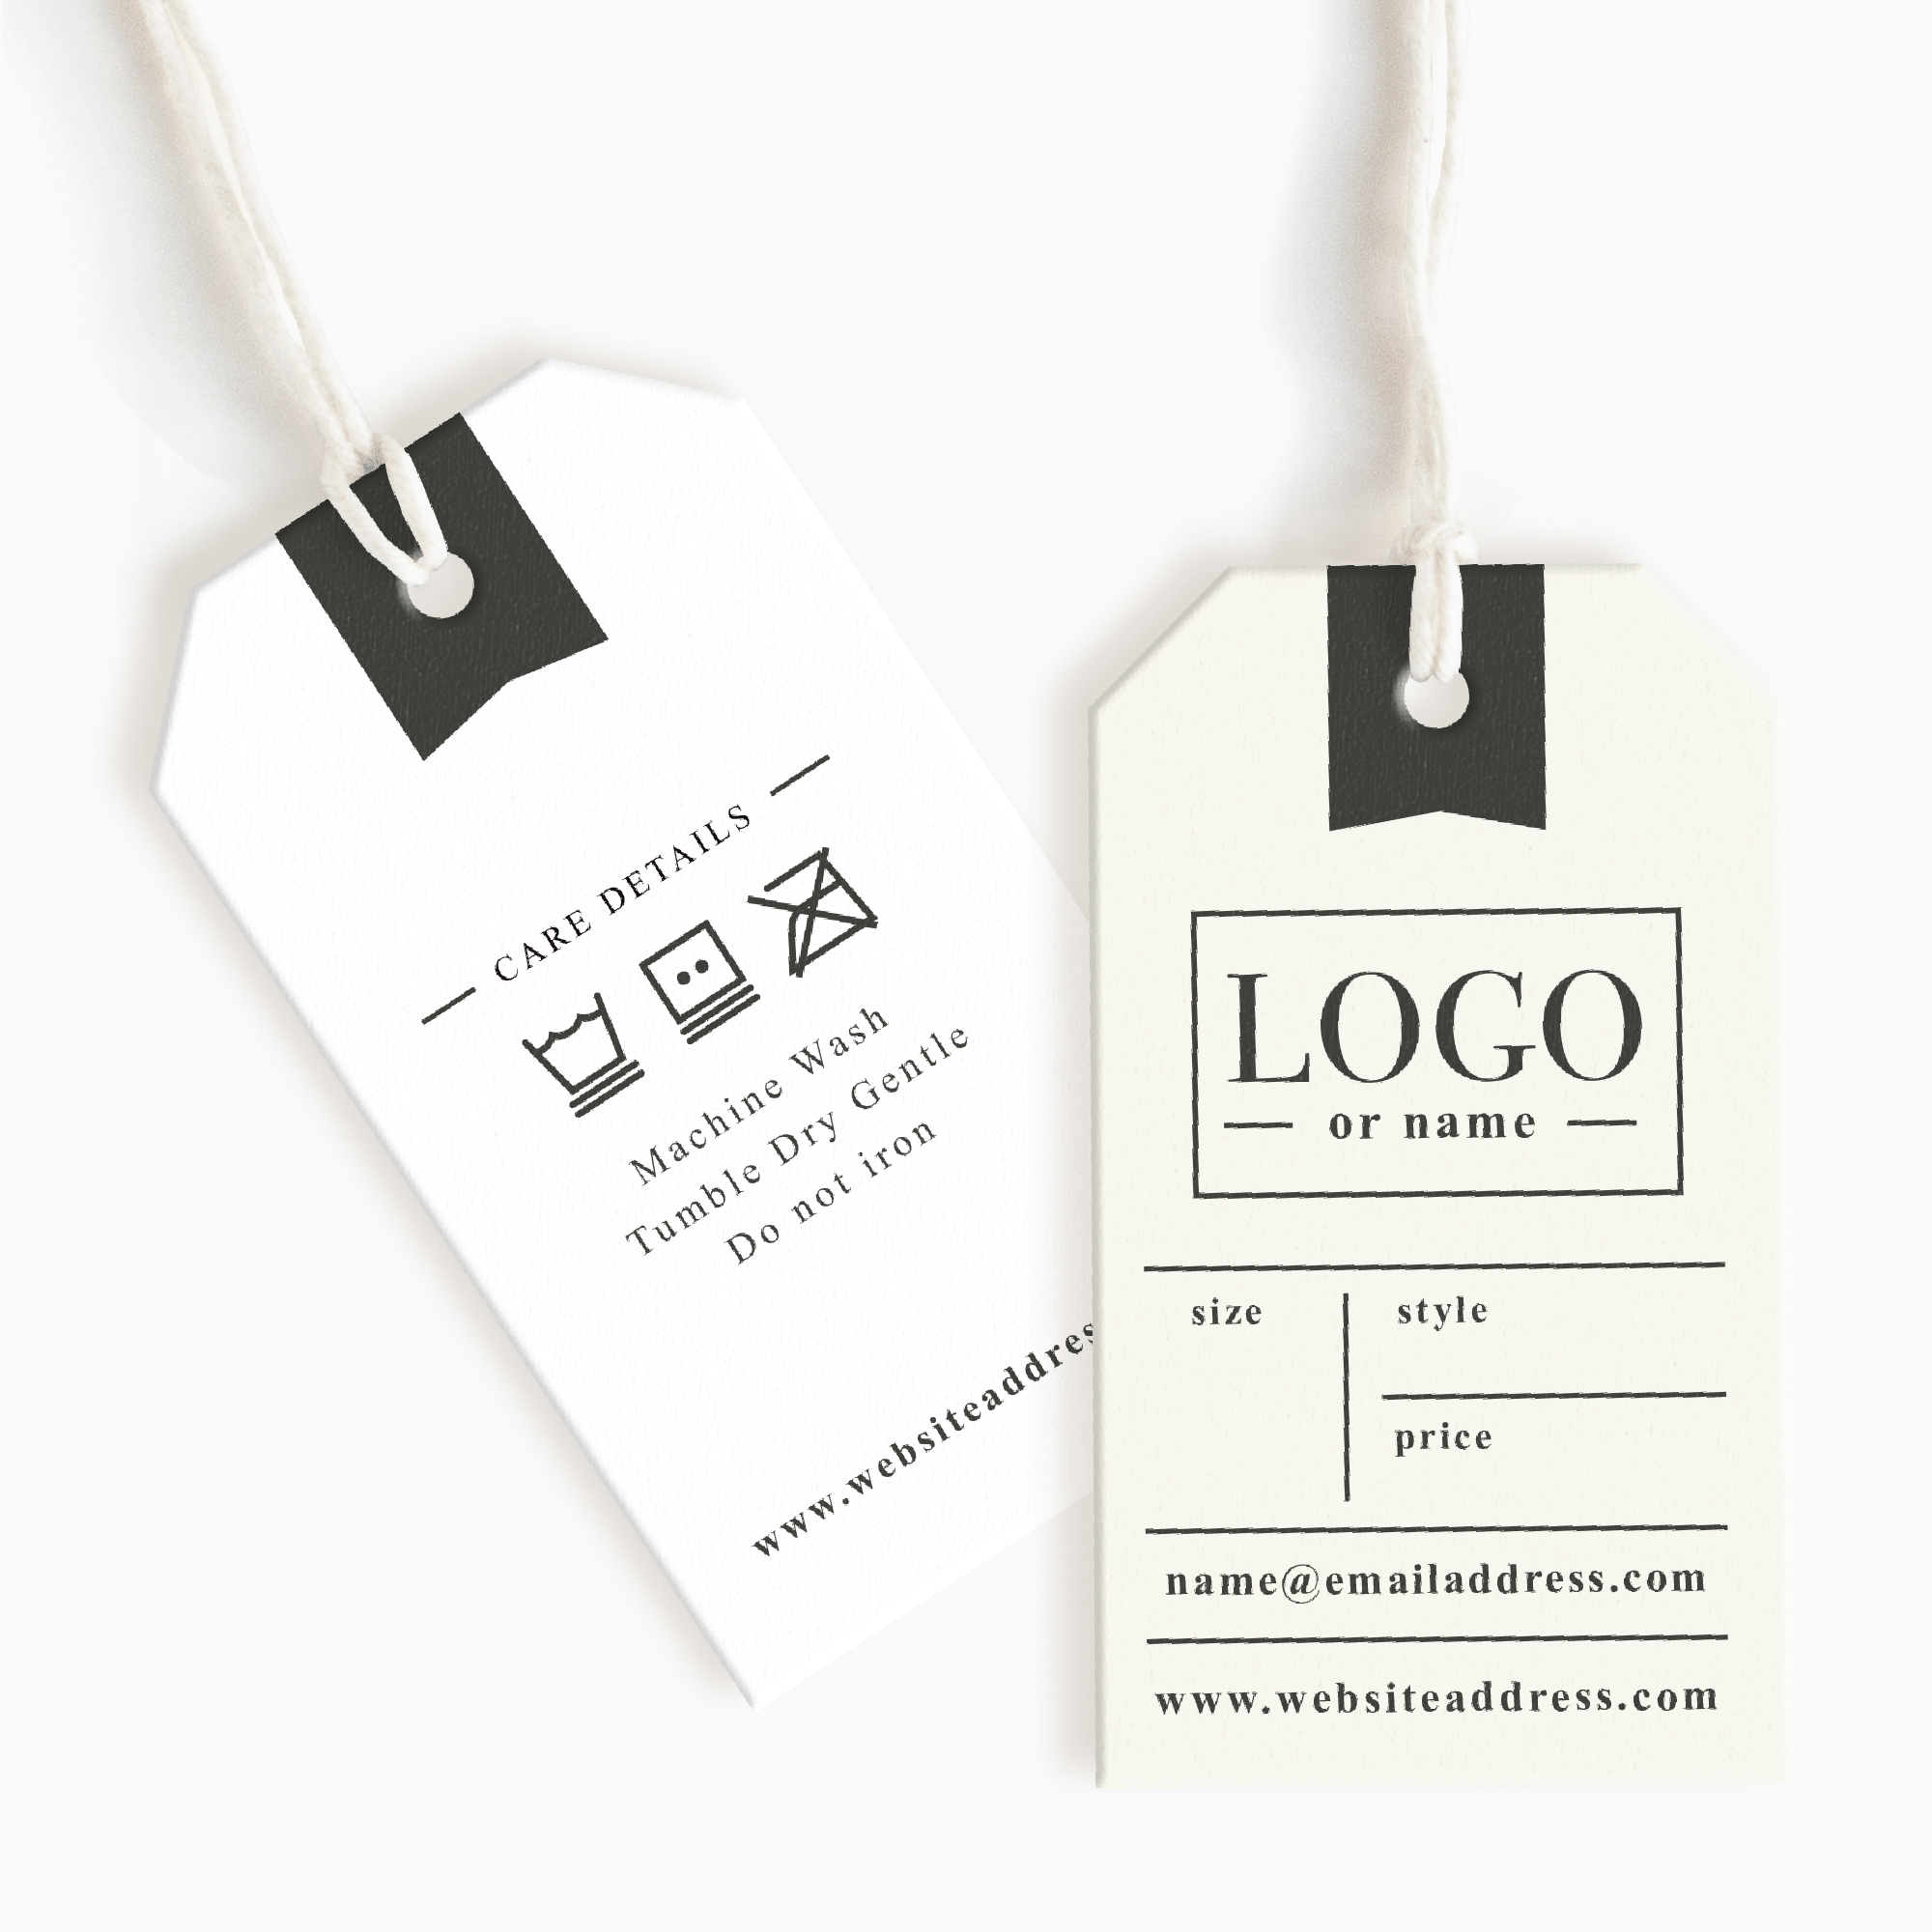 branding, hang tag  Hang tag design, Hang tags, Tag design